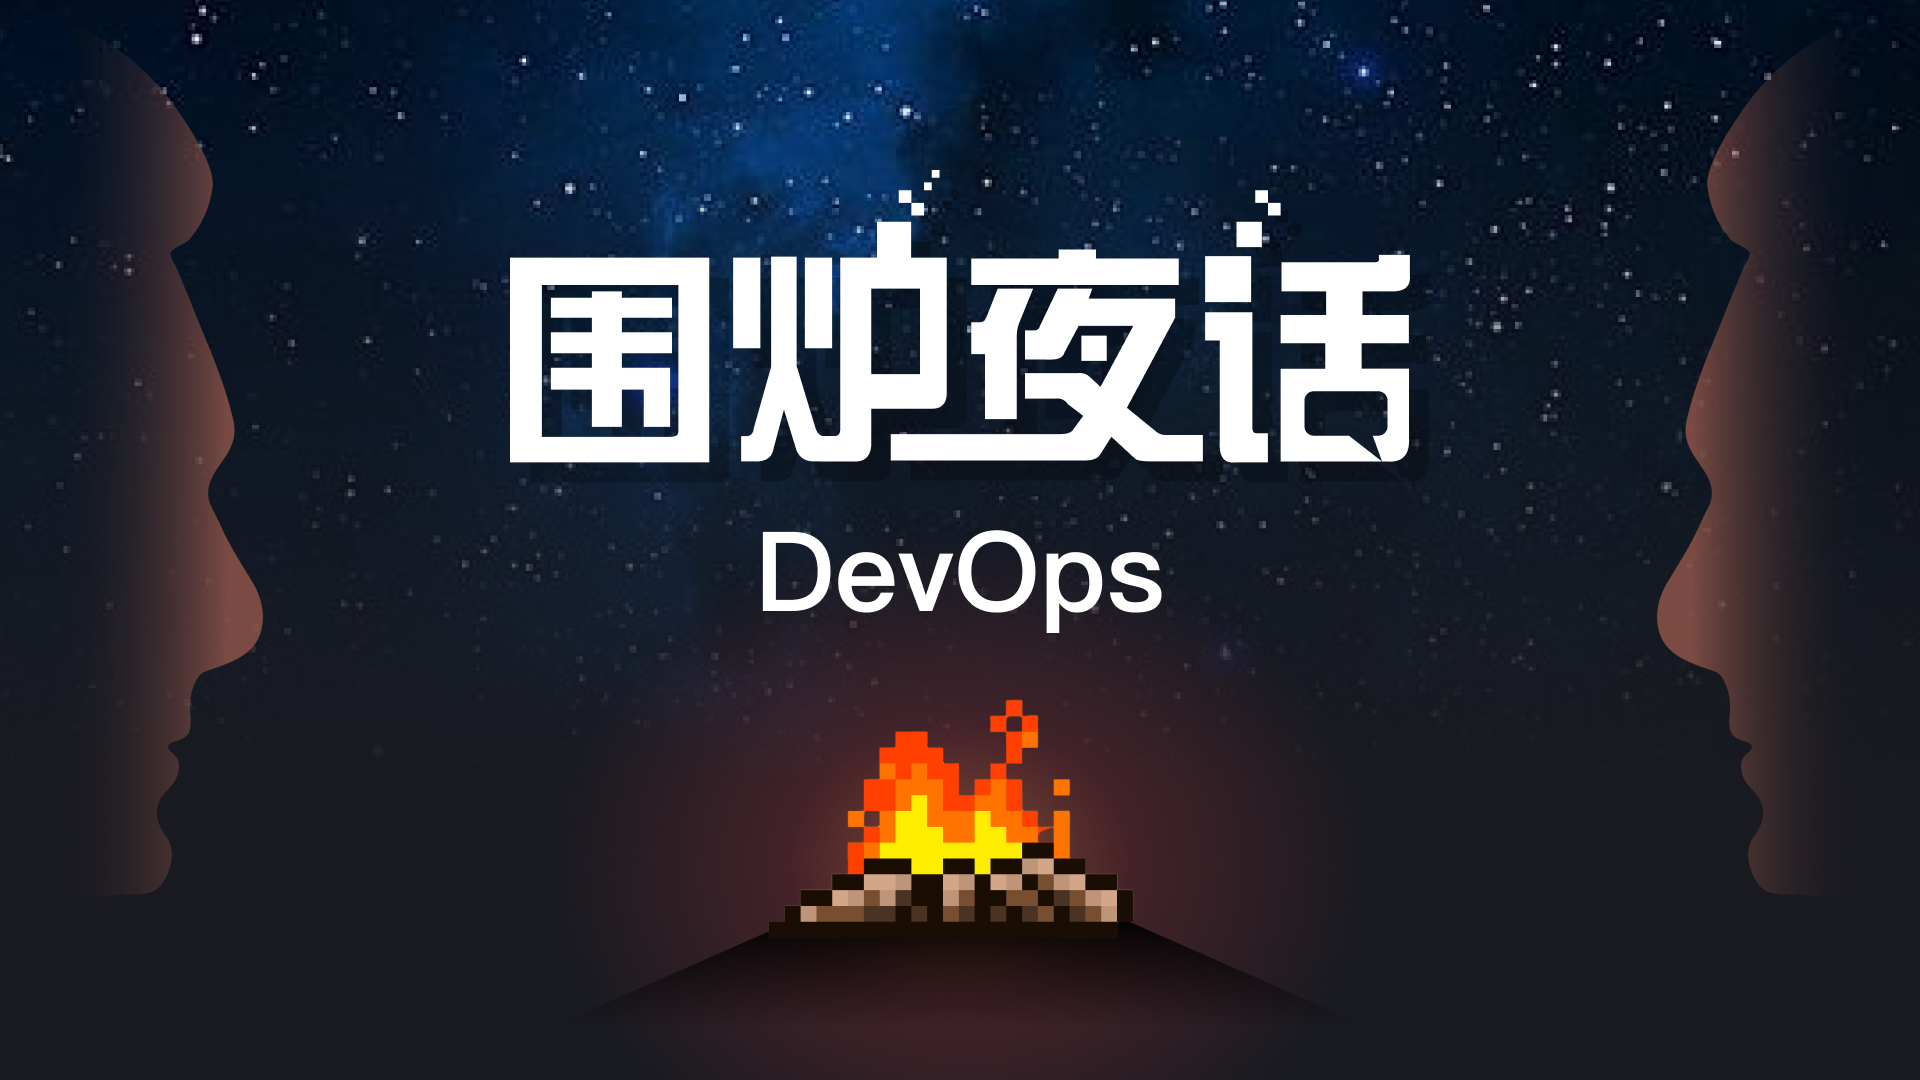 《DevOps围炉夜话》- Pilot - CNCF开源DevOps项目DevStream简介 - feat. PMC成员胡涛